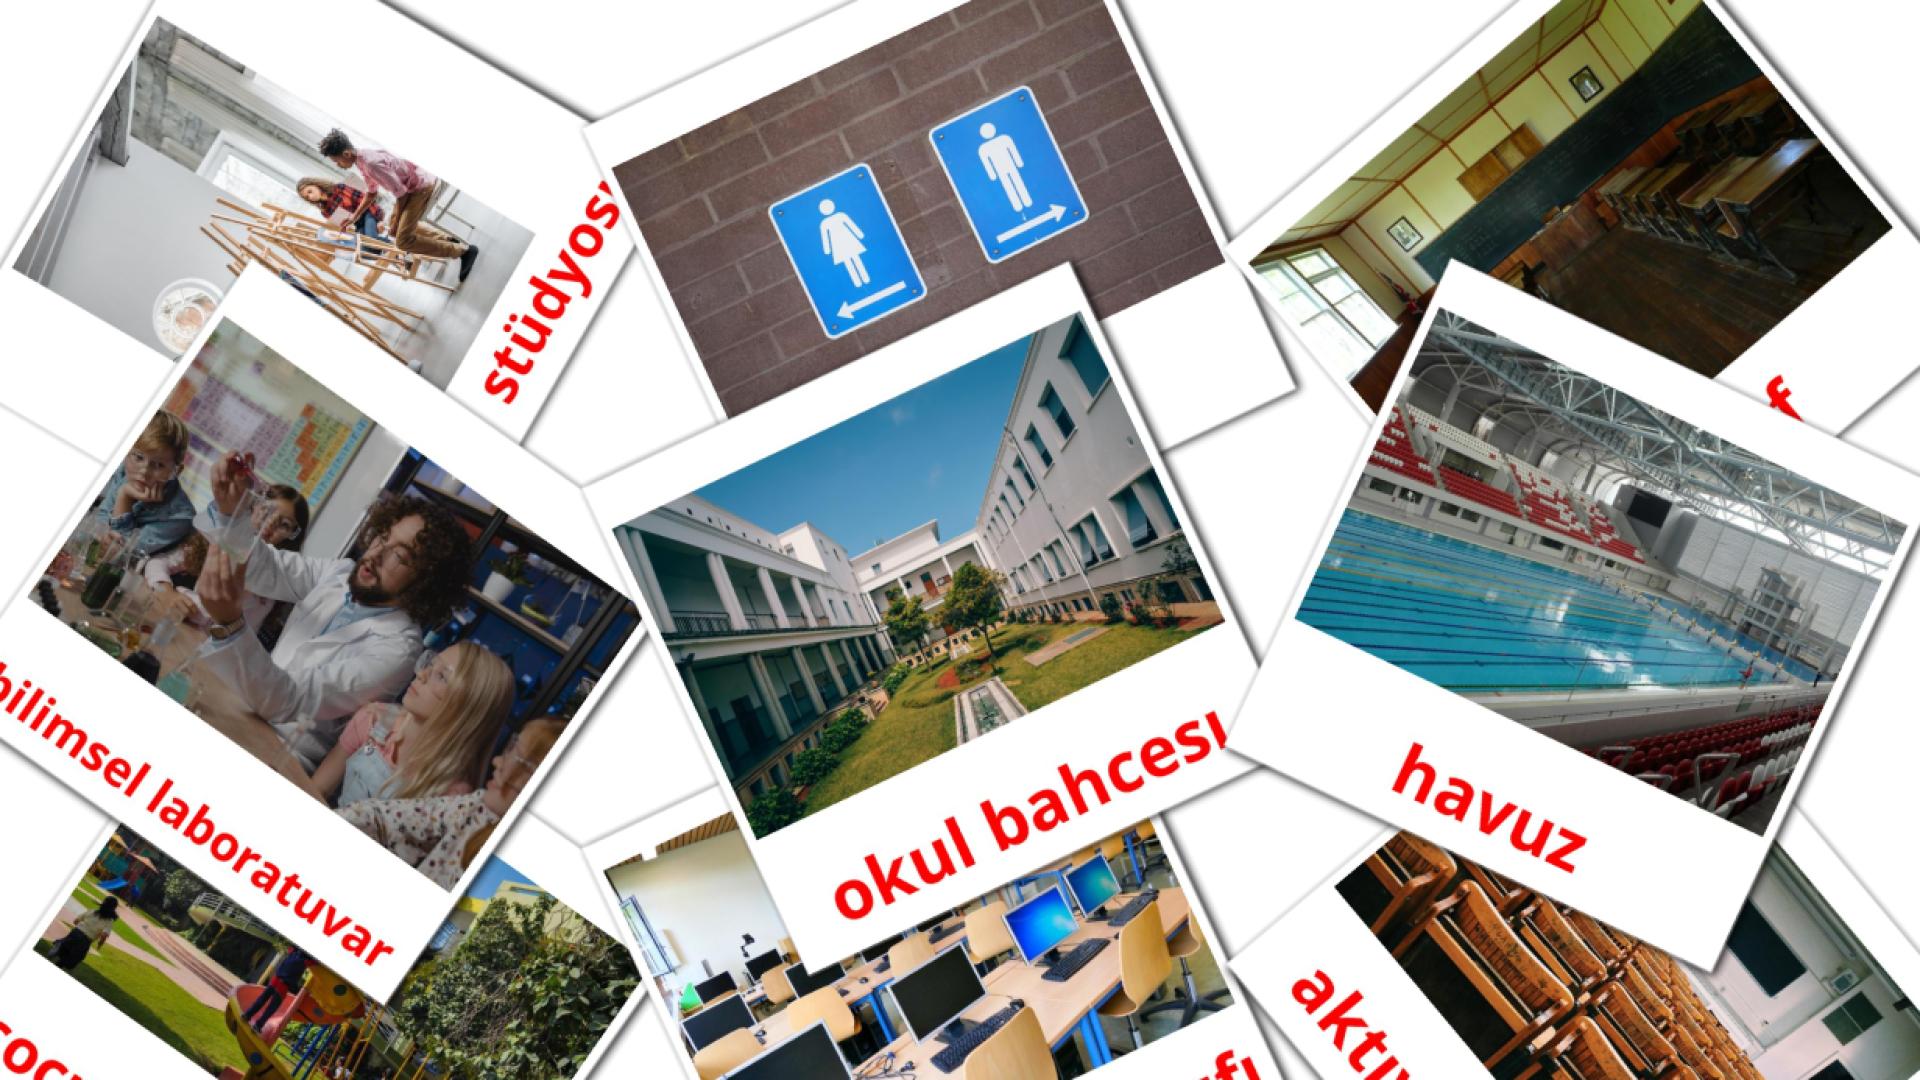 17 Bildkarten für Okul binası